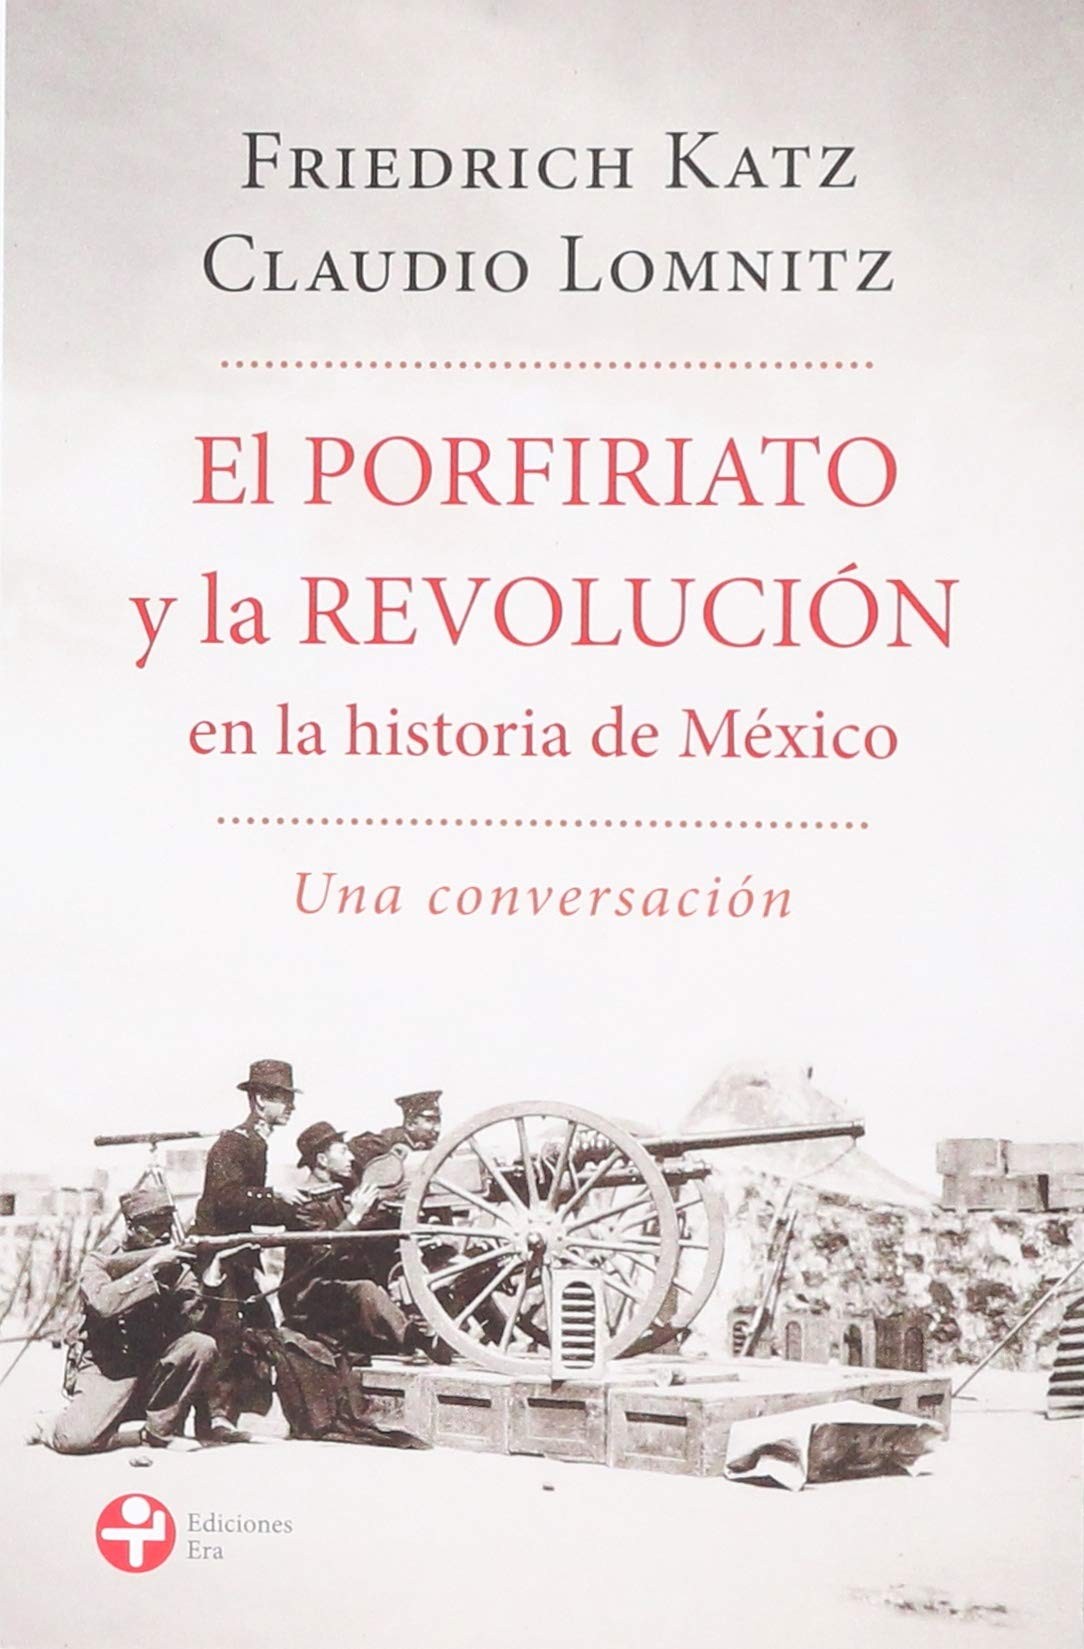 Book Cover: El Porfiriato y la Revolución en la historia de México, Friedtich Kat and Claudio Lomnitz